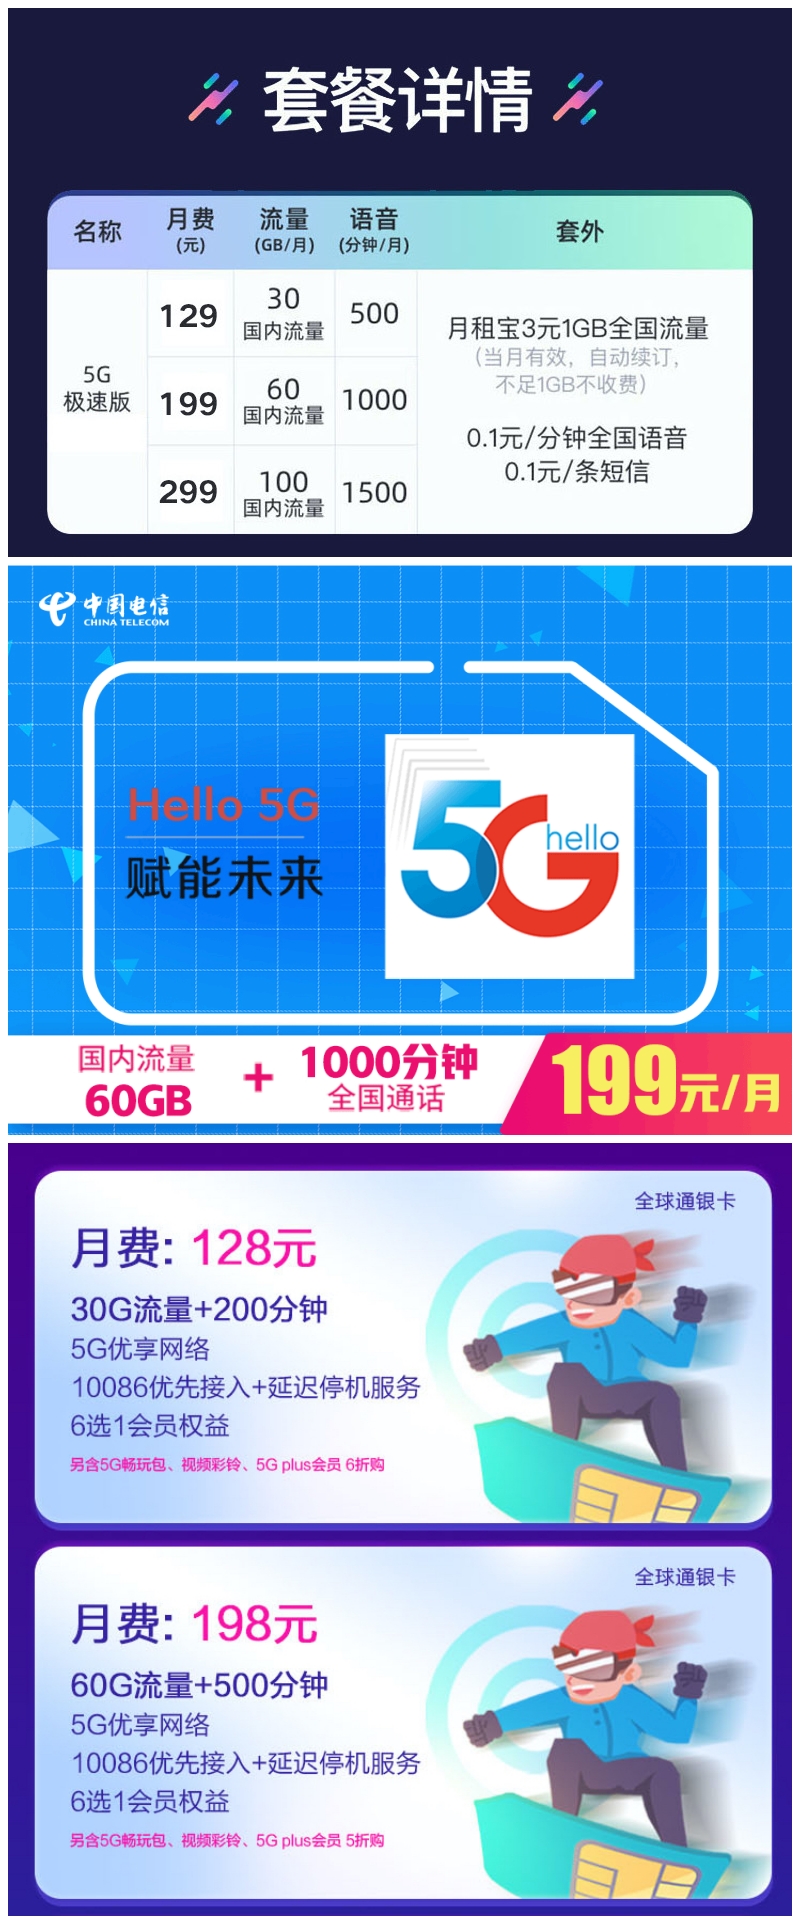 5G 手机越卖越便宜，现在是转向 5G 的好时机吗？